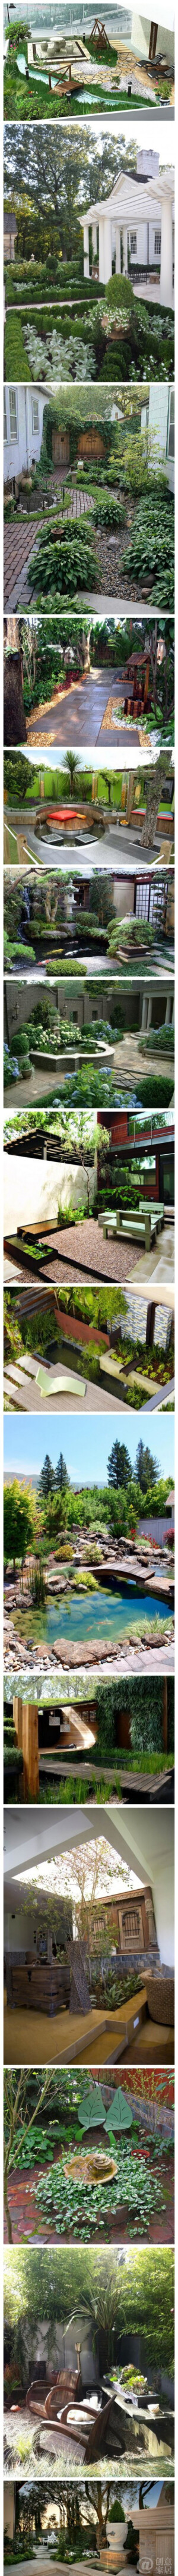 超漂亮庭院设计，绿色的小迷宫、鹅卵石小径、小池塘、喷泉、茂盛的盆栽和缤纷的鲜花……各种美~~~